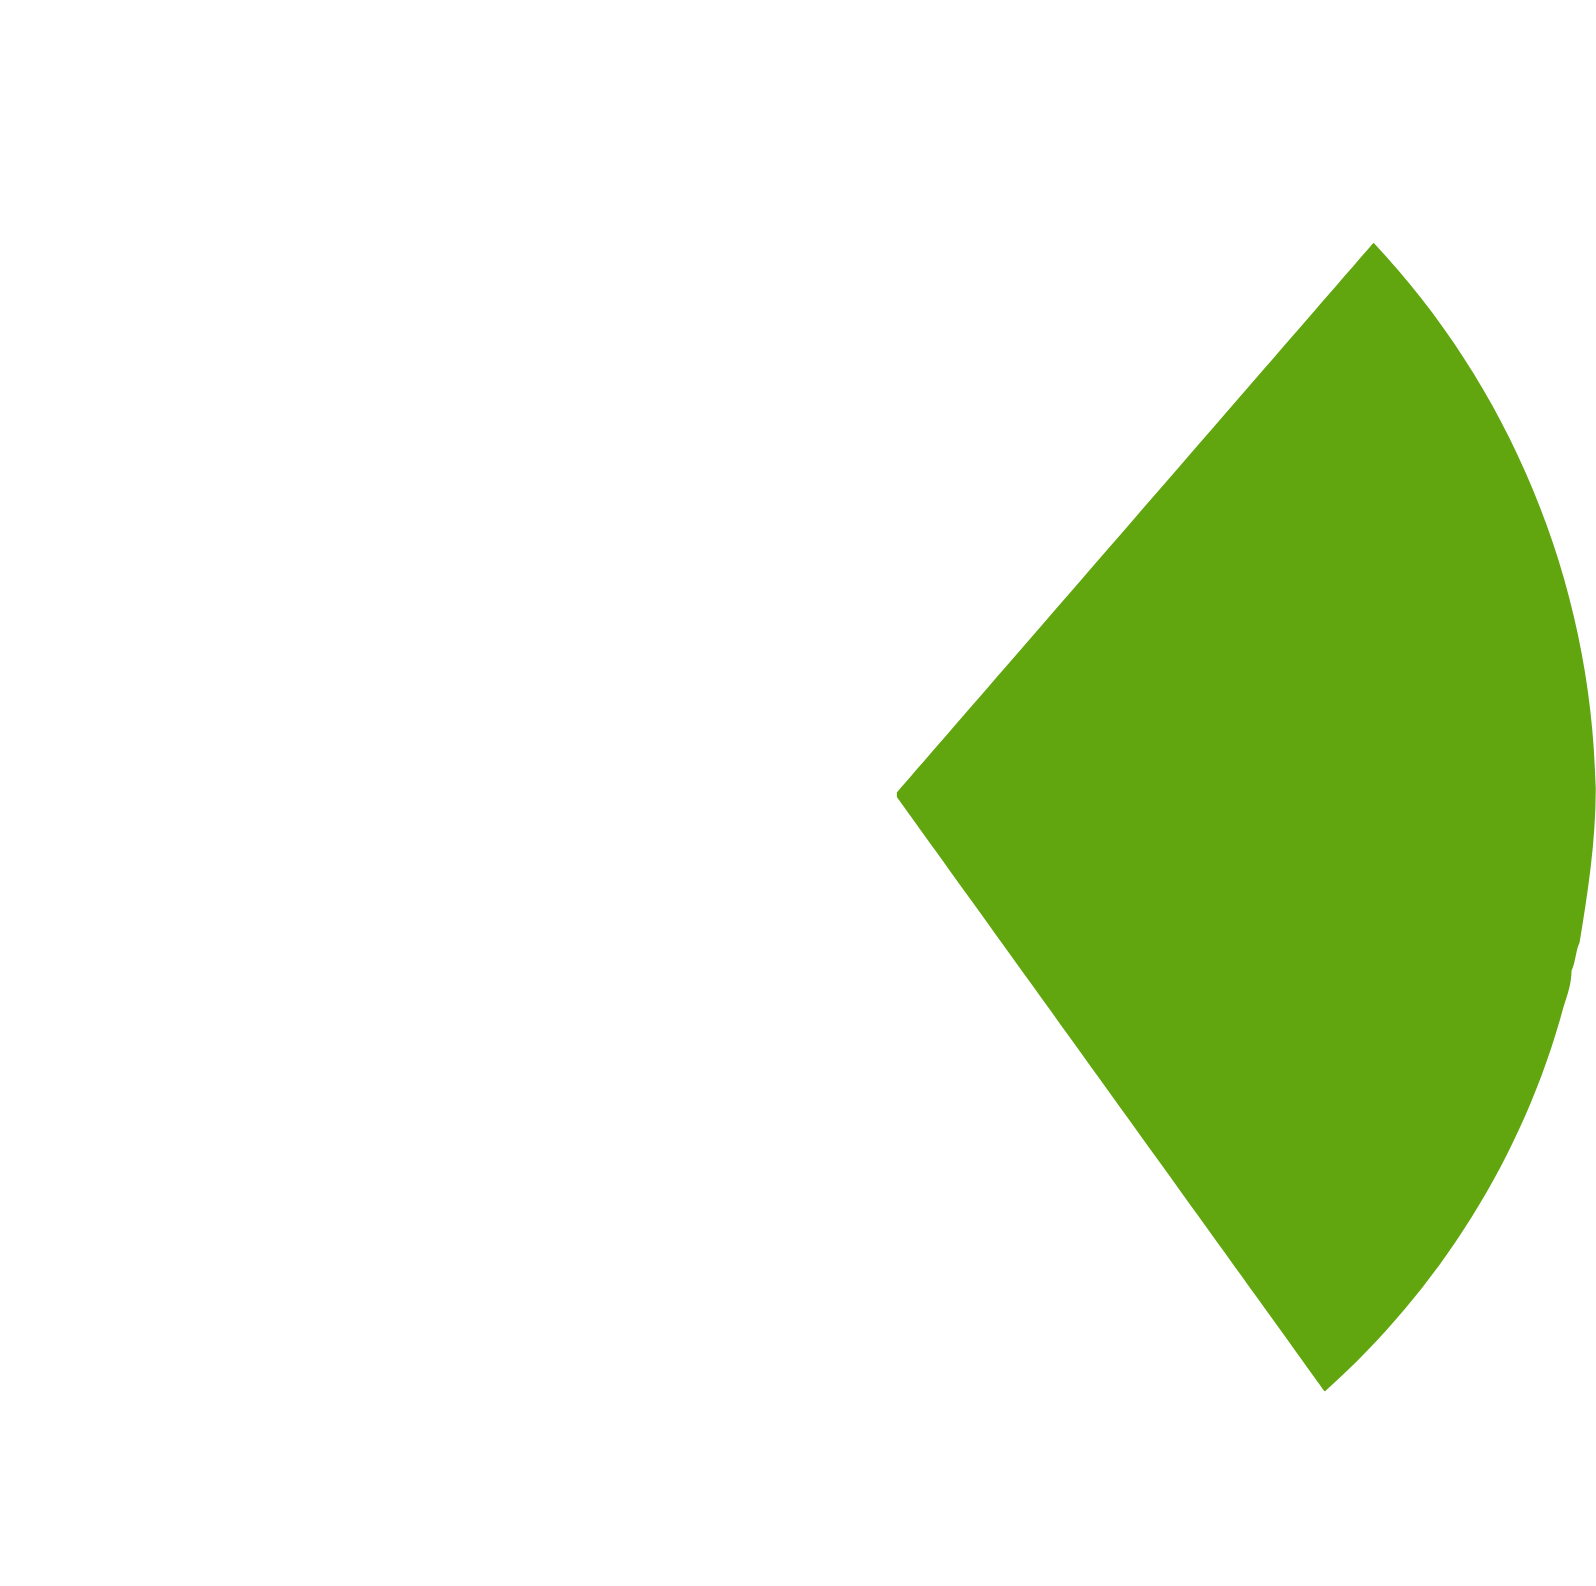 Cepton logo pour fonds sombres (PNG transparent)